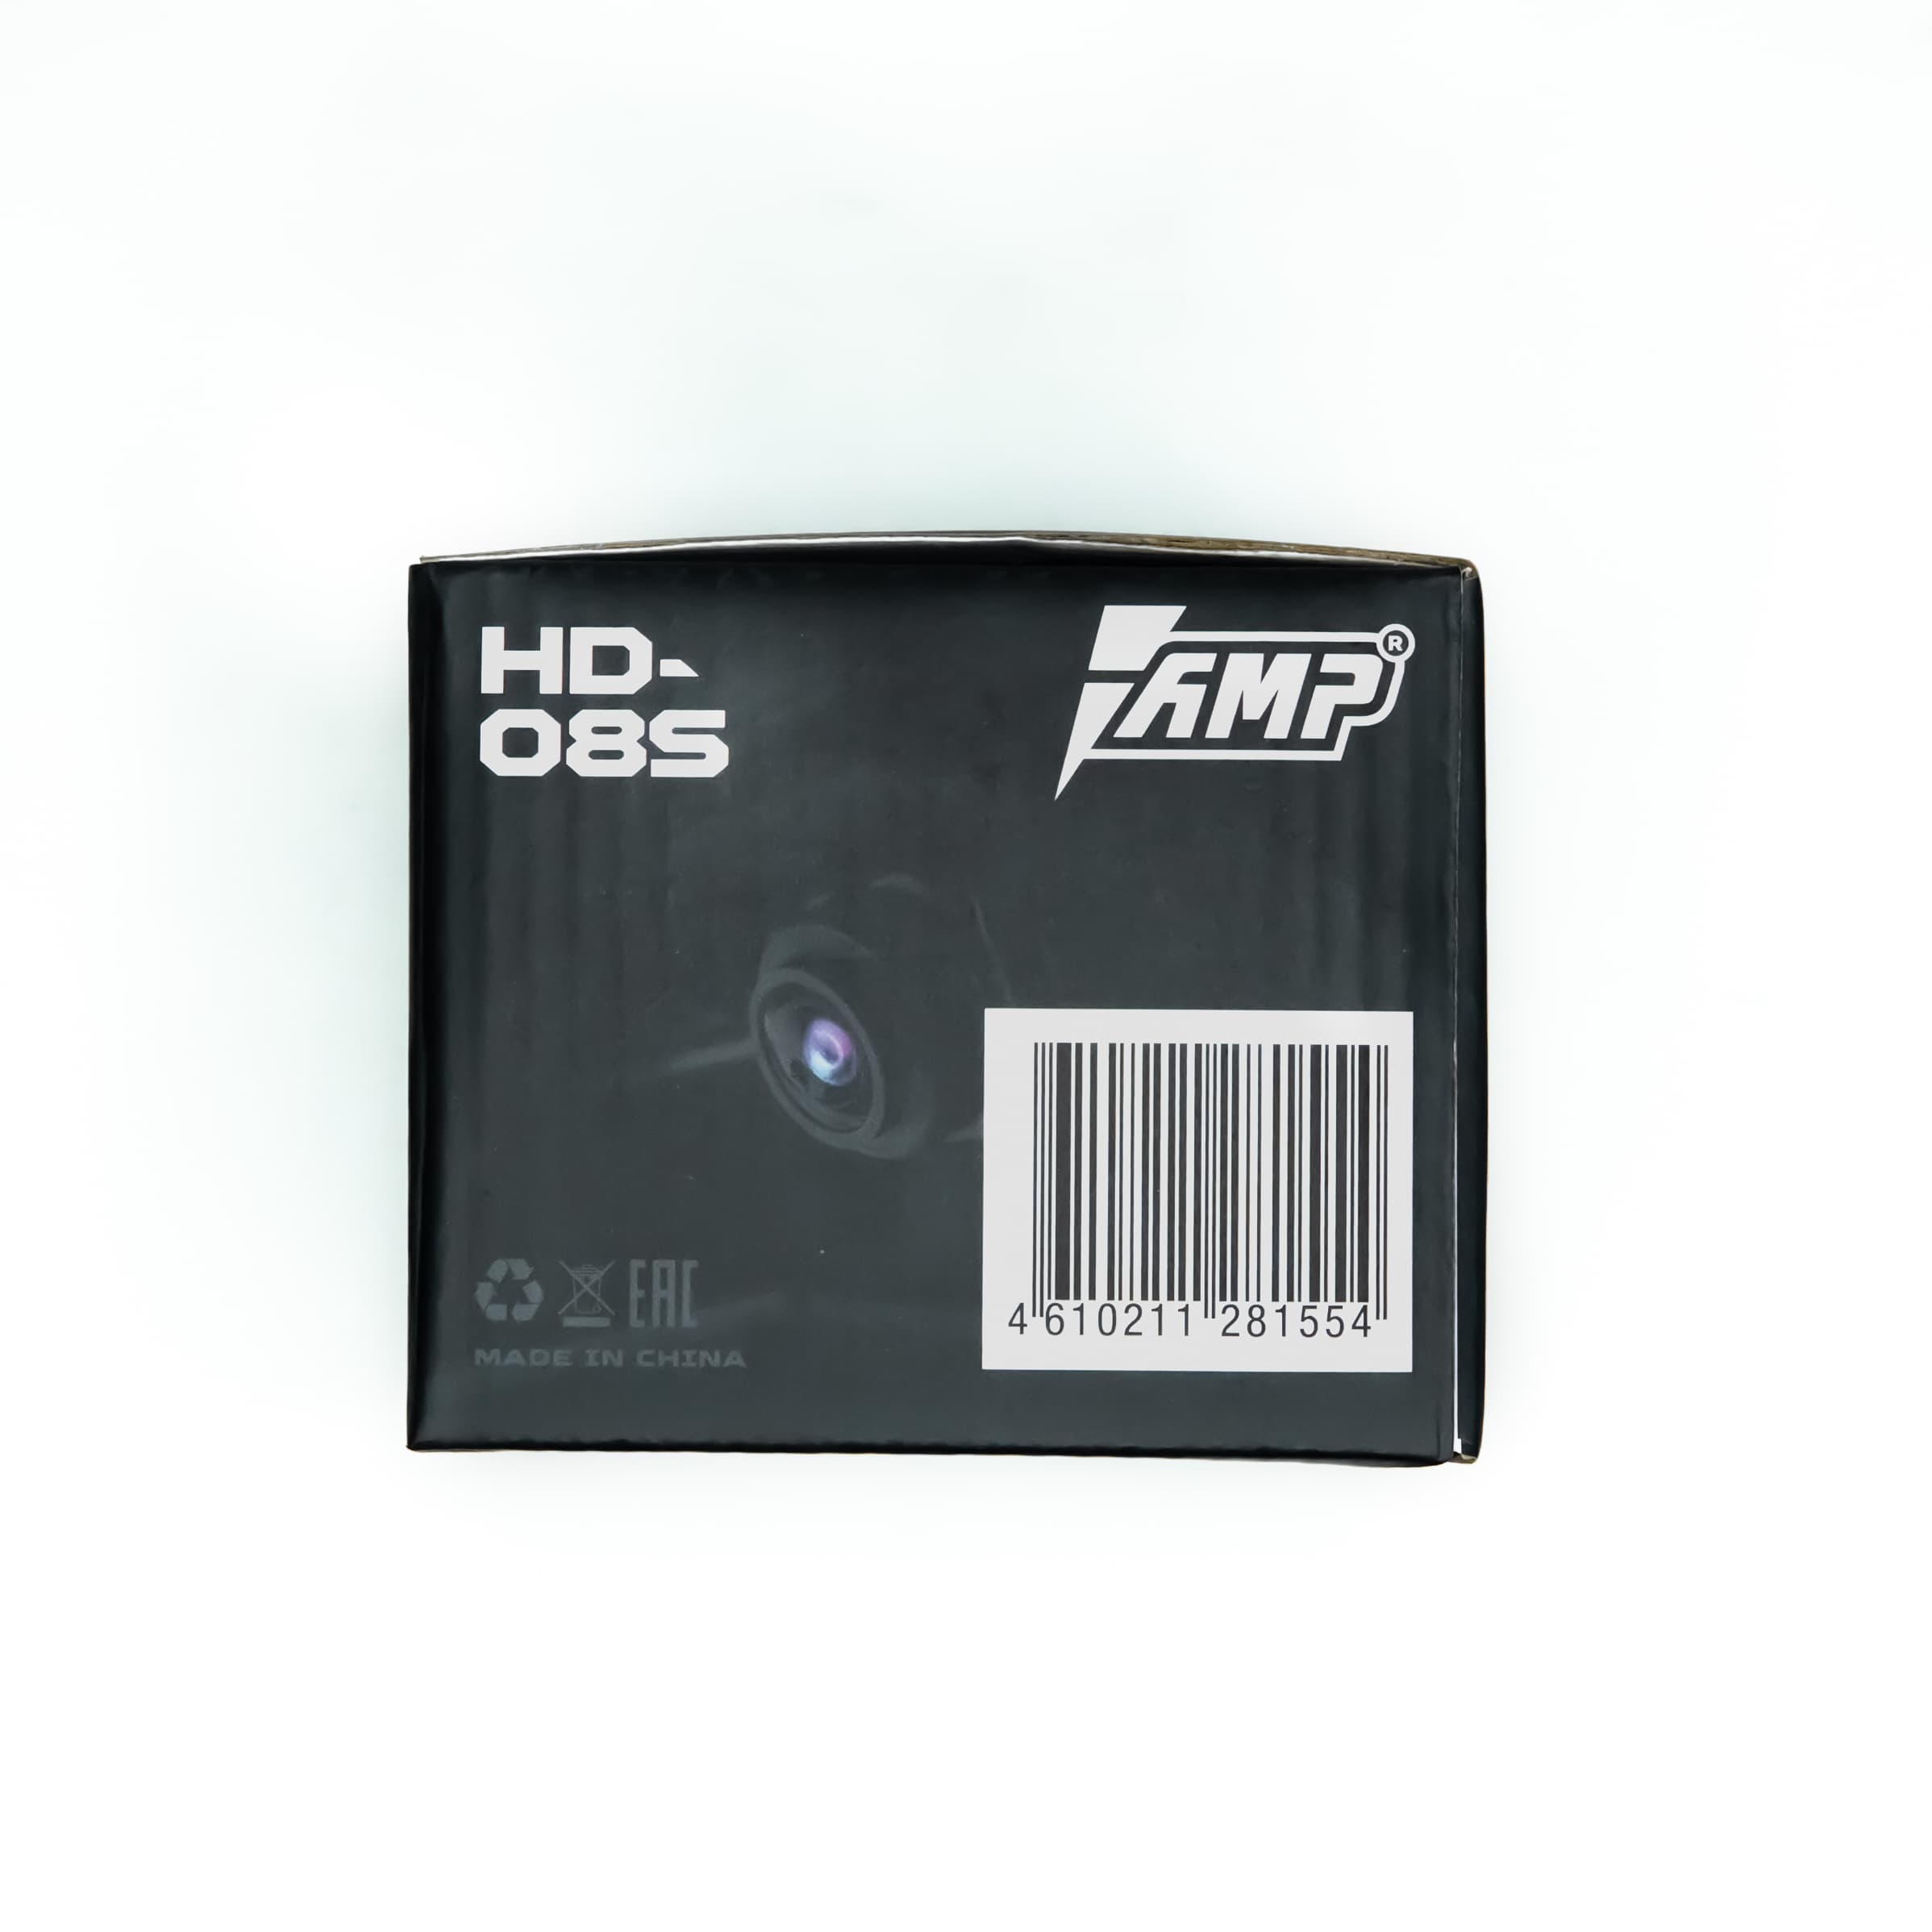 Камера универсальная AMP HD-08S AHD купить в интернет магазине AMPGROUP.  Камера универсальная AMP HD-08S AHD   цены, большой каталог, новинки.
